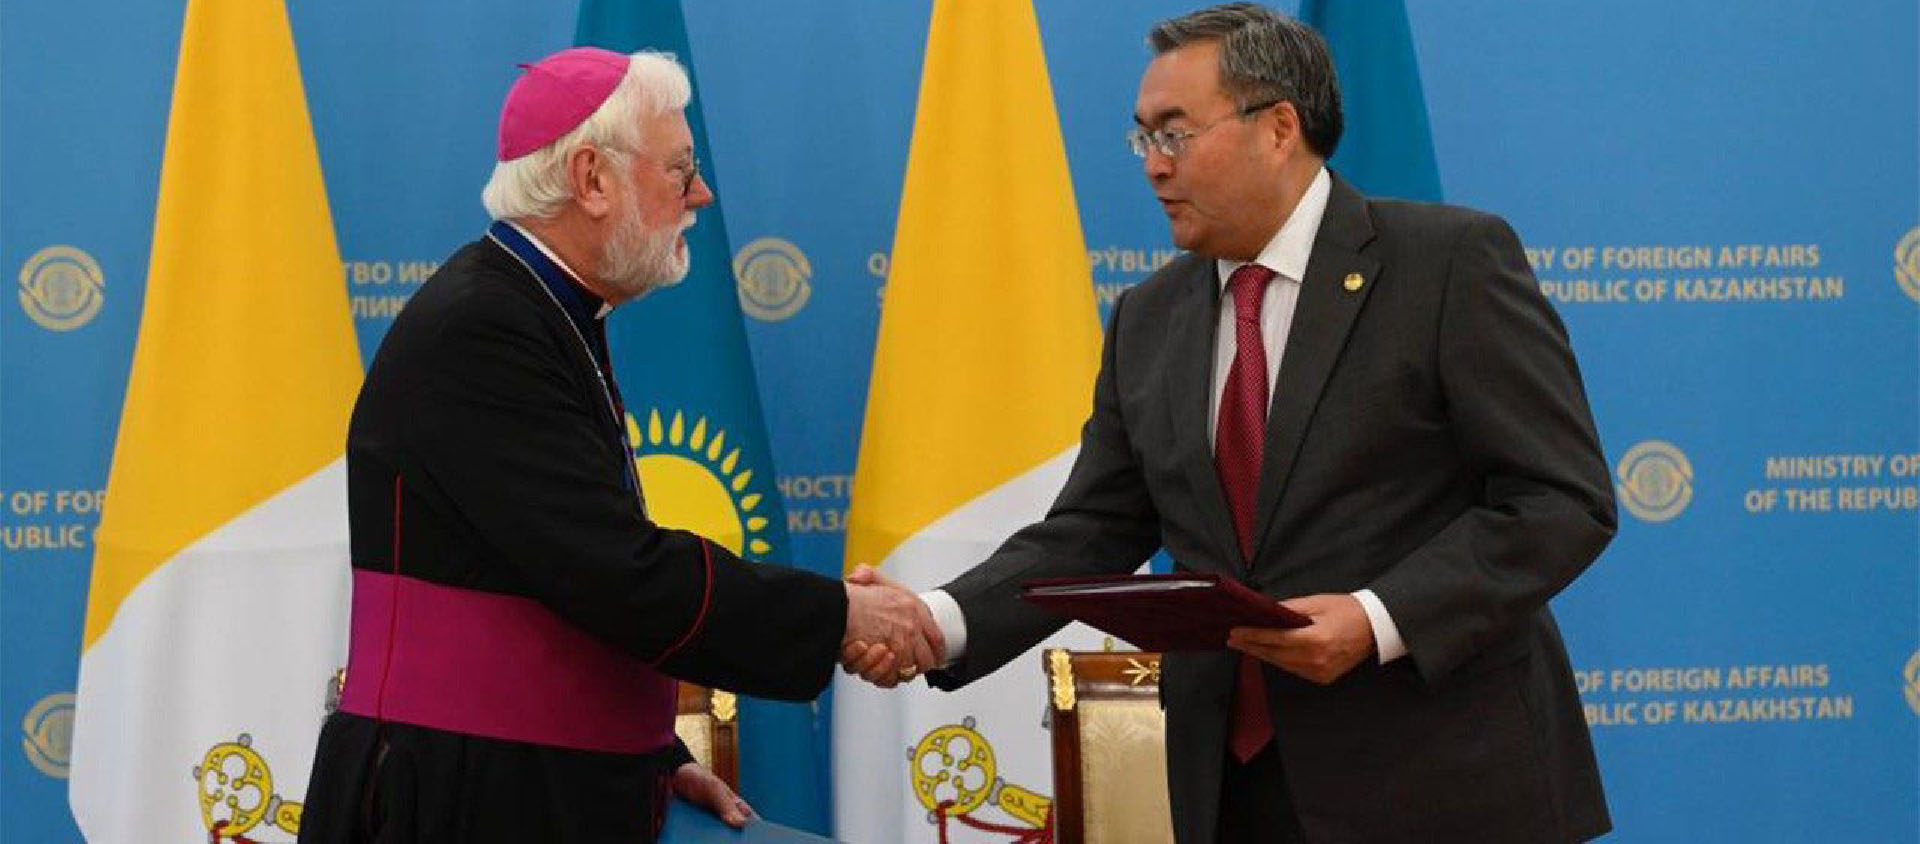 L'accord signé aujourd'hui complète  l’accord bilatéral signé en 1998 entre les deux États | © Vatican News